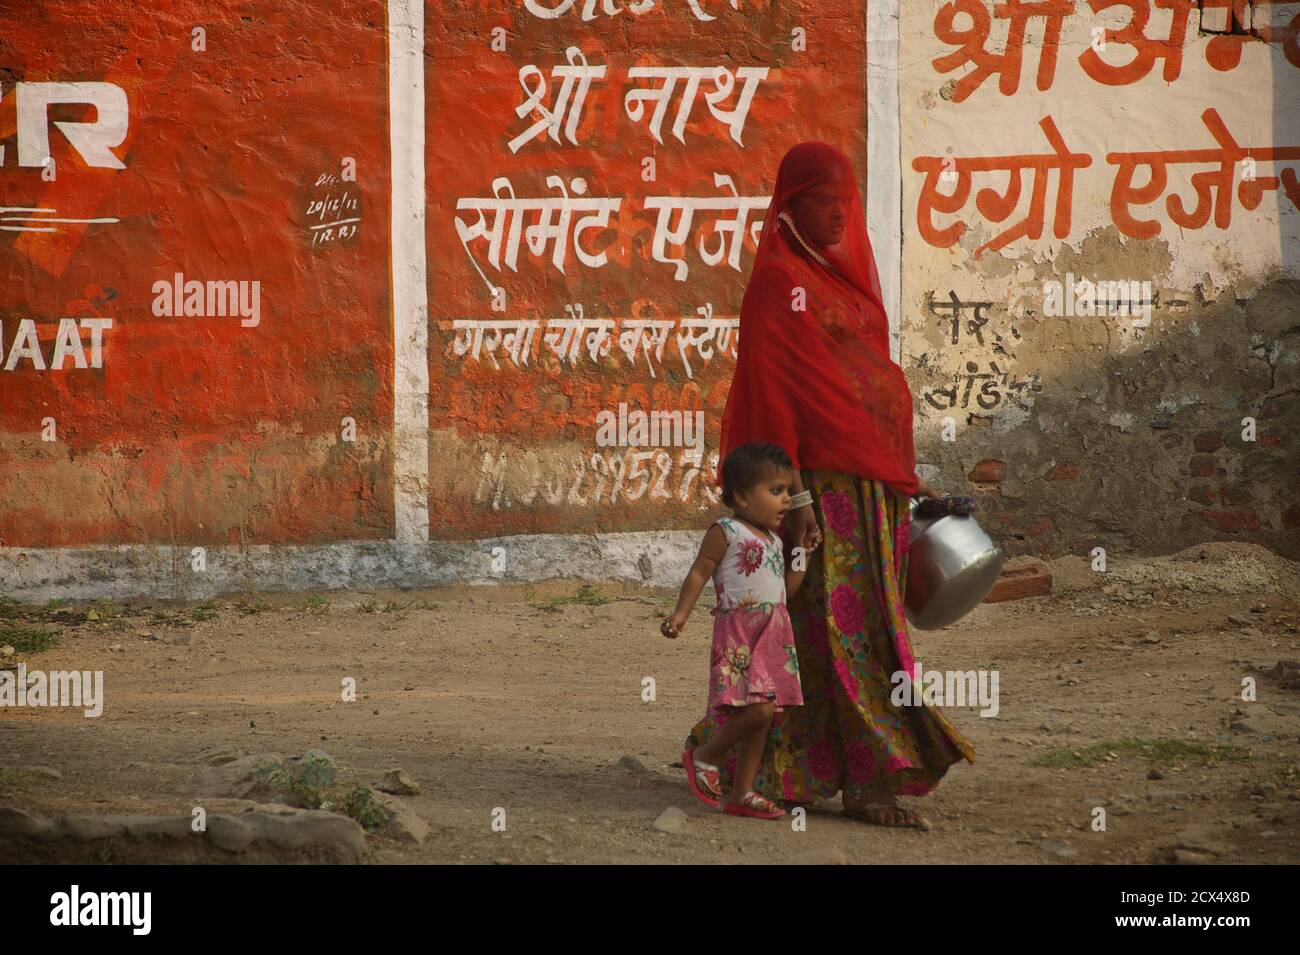 Indische Frau im roten Schleier mit Kind. Rajasthan, Indien. Dieses Bild enthält kulturell relevantes Material: Ein Sari ist ein südasiatisches weibliches Kleidungsstück, das aus einem Tuch mit einer Länge von 4 bis 8 Metern und einer Breite von 60 bis 1,20 Metern besteht, das typischerweise um die Taille gewickelt ist, wobei ein Ende über die Schulter drapiert ist und das Mittelriff entblößte. Der Sari wird normalerweise über einem Petticoat getragen. Der Sari ist mit Gnade verbunden und gilt weithin als Symbol der indischen Kultur. Stockfoto